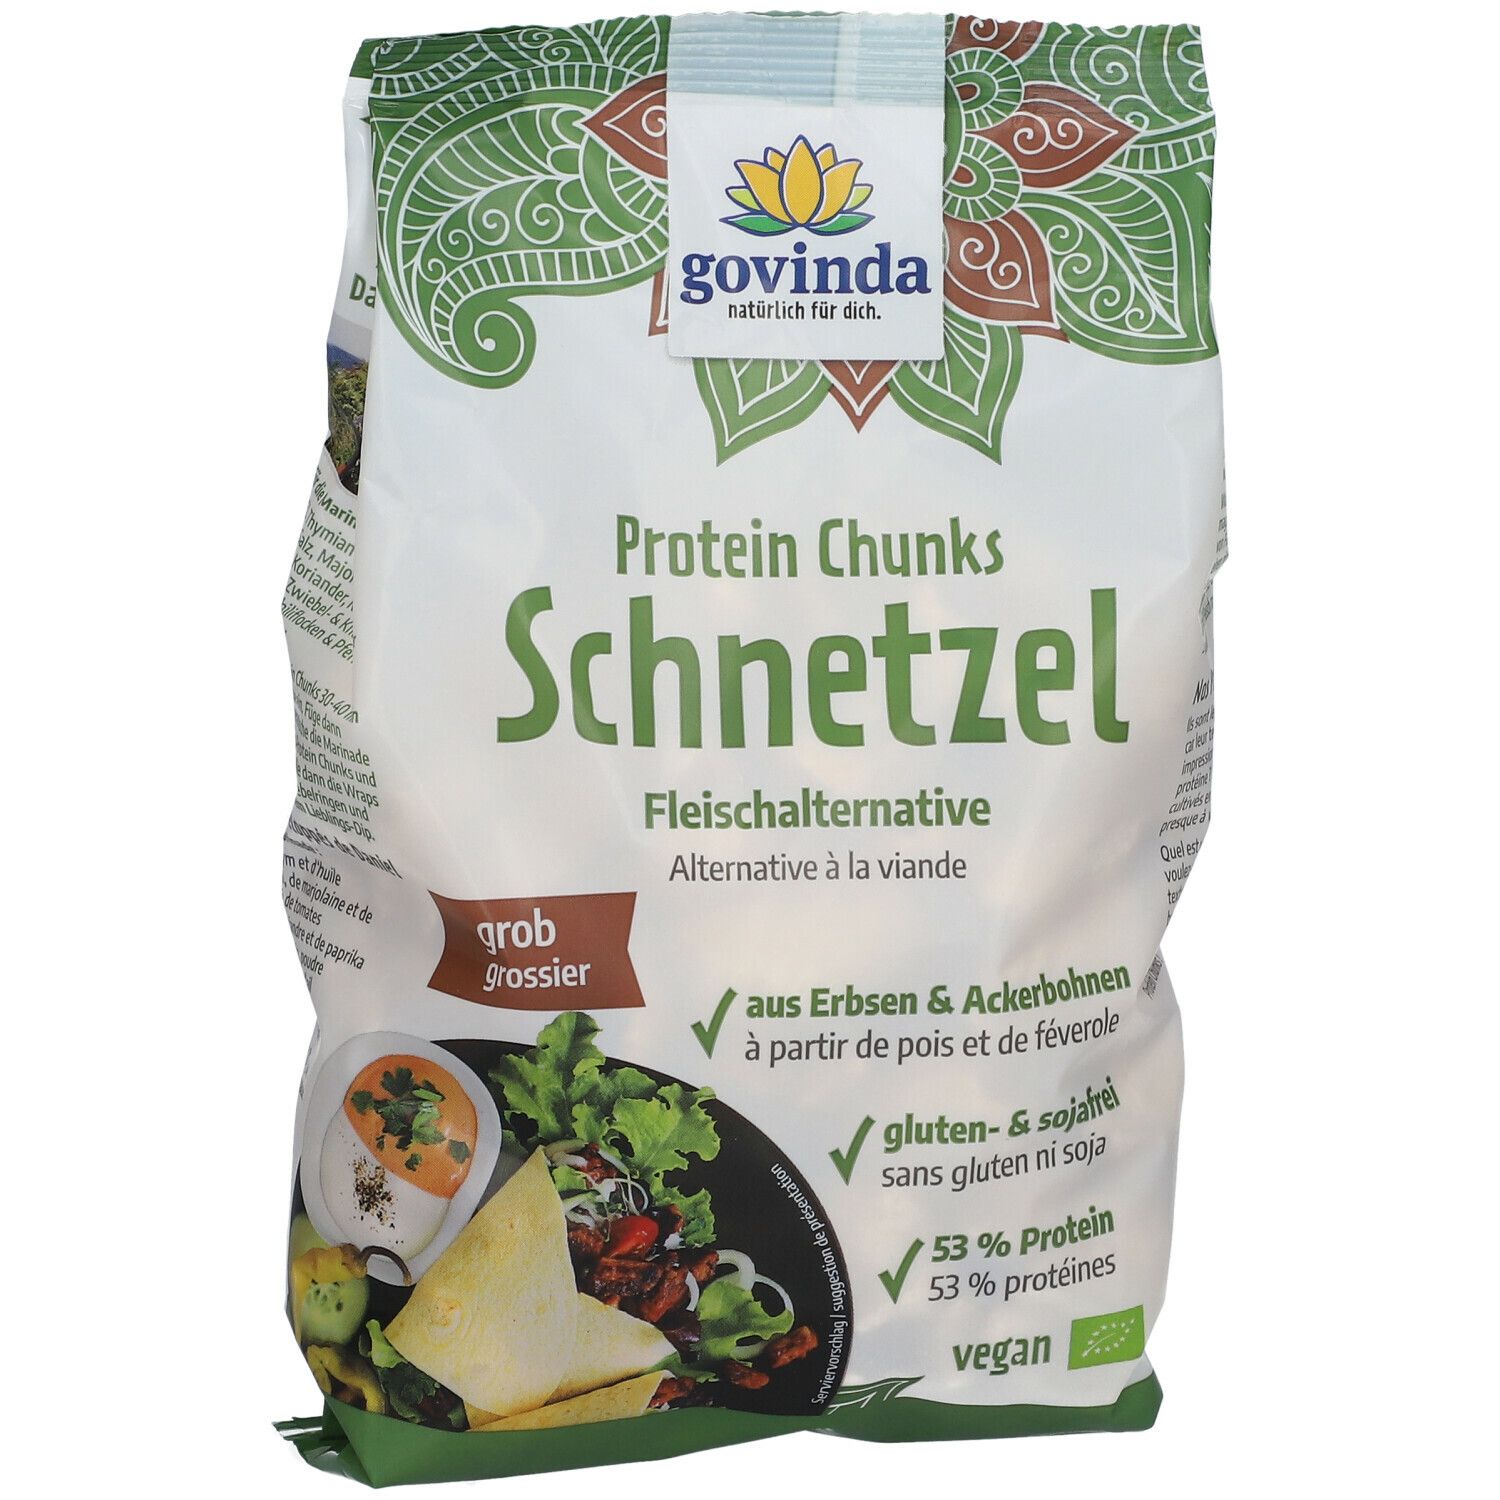 govinda Protein Chunks Schnetzel